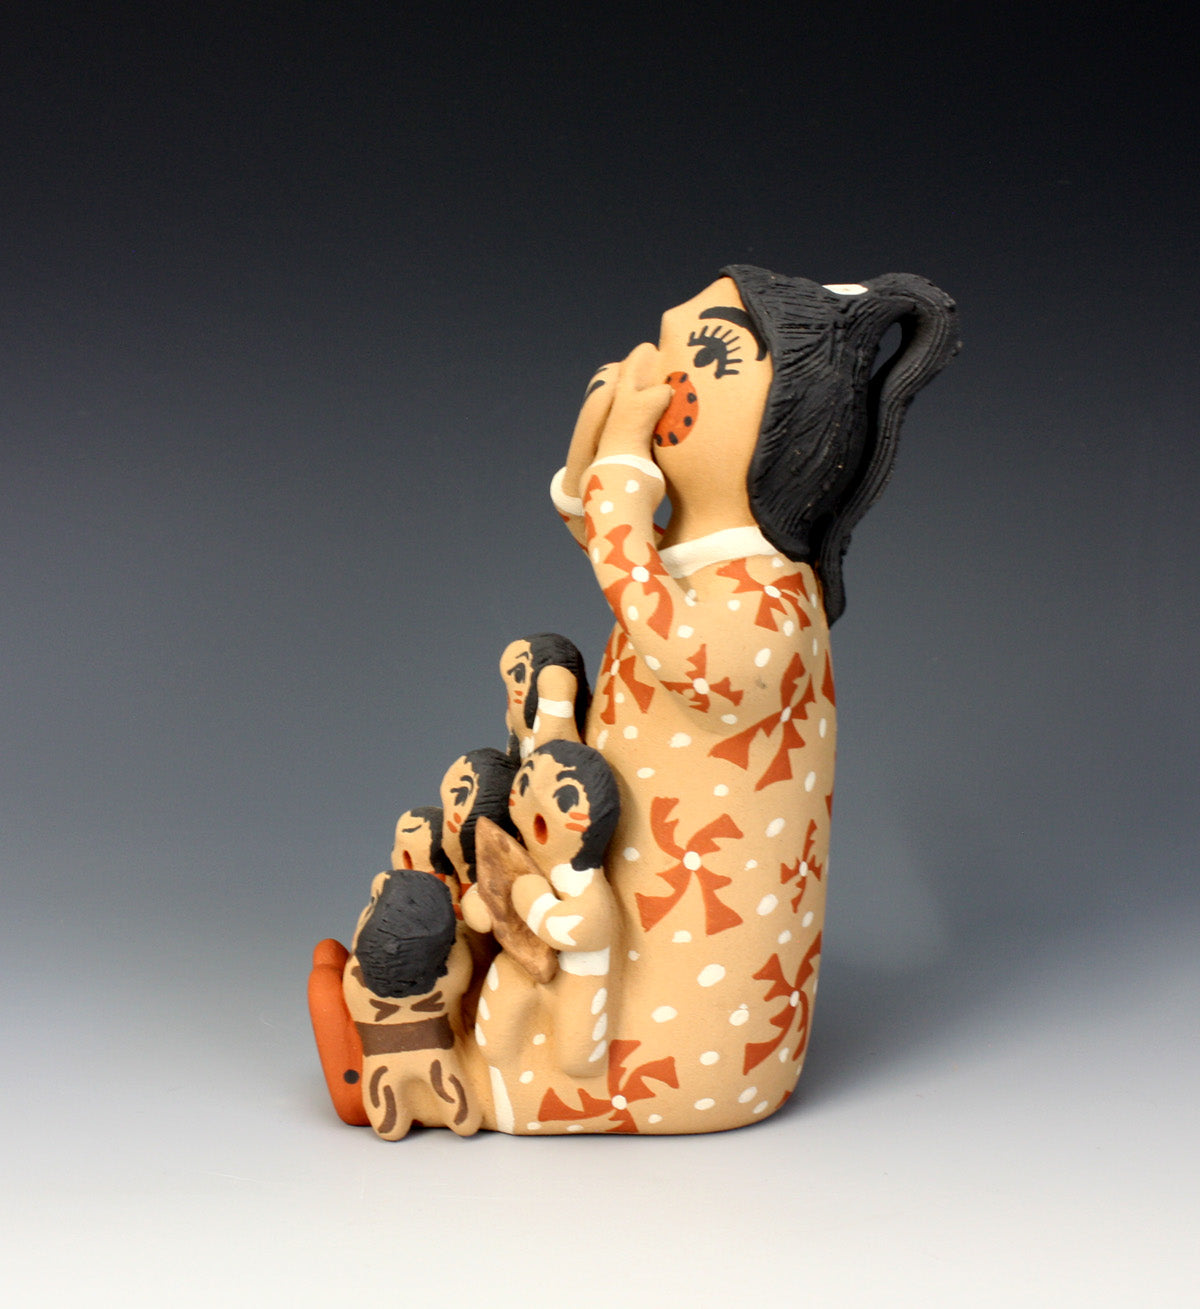 Jemez Pueblo American Indian Pottery Storyteller - Bonnie Fragua